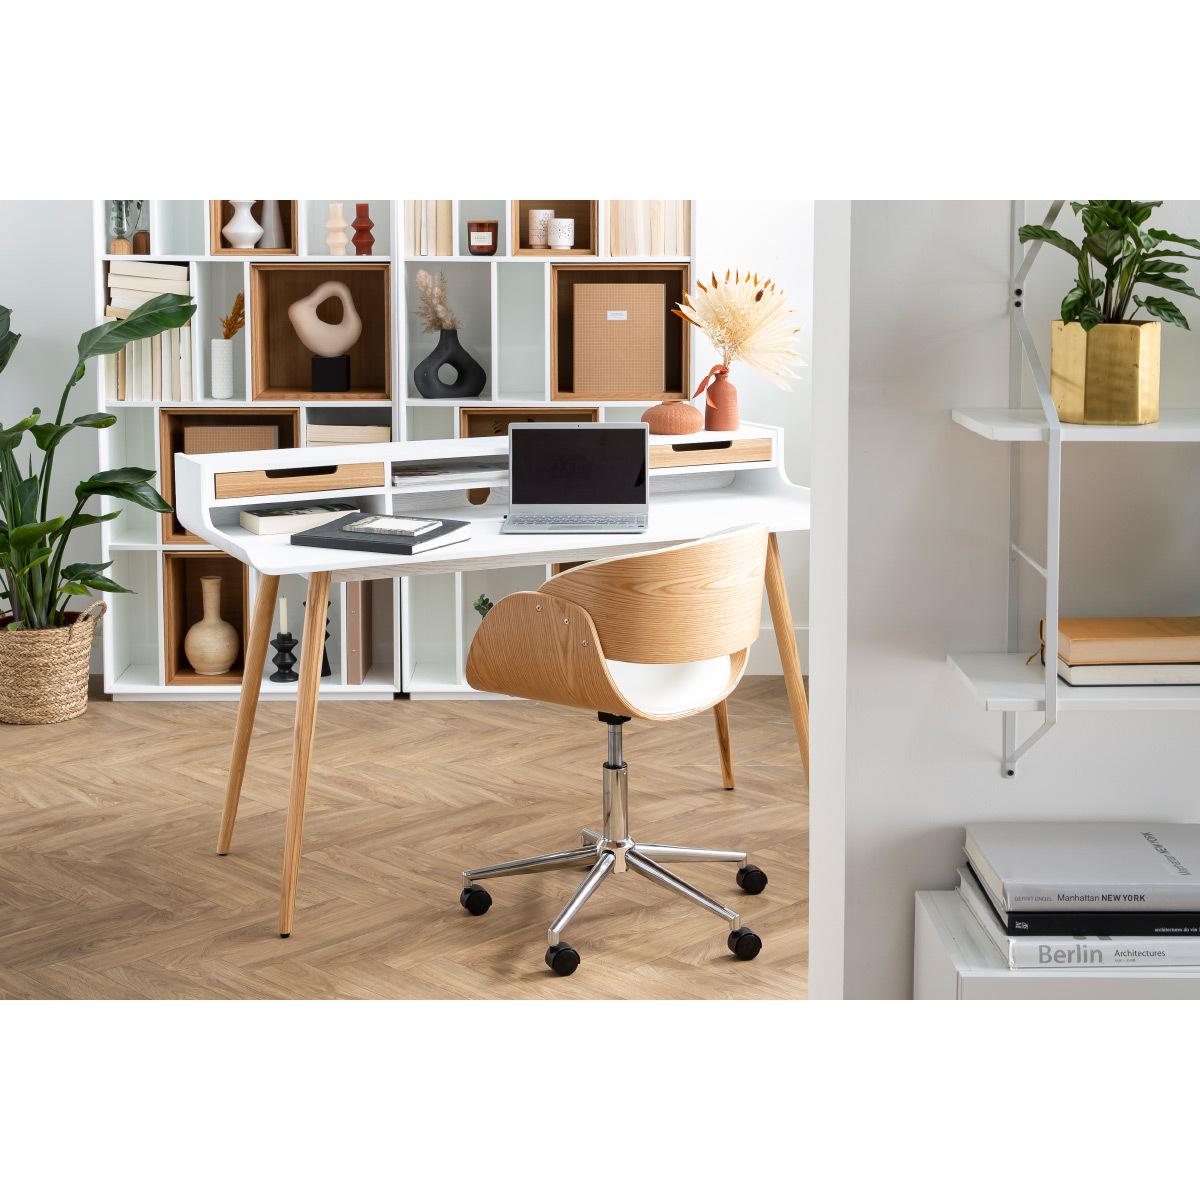 Chaise de bureau à roulettes design en tissu gris, bois clair et